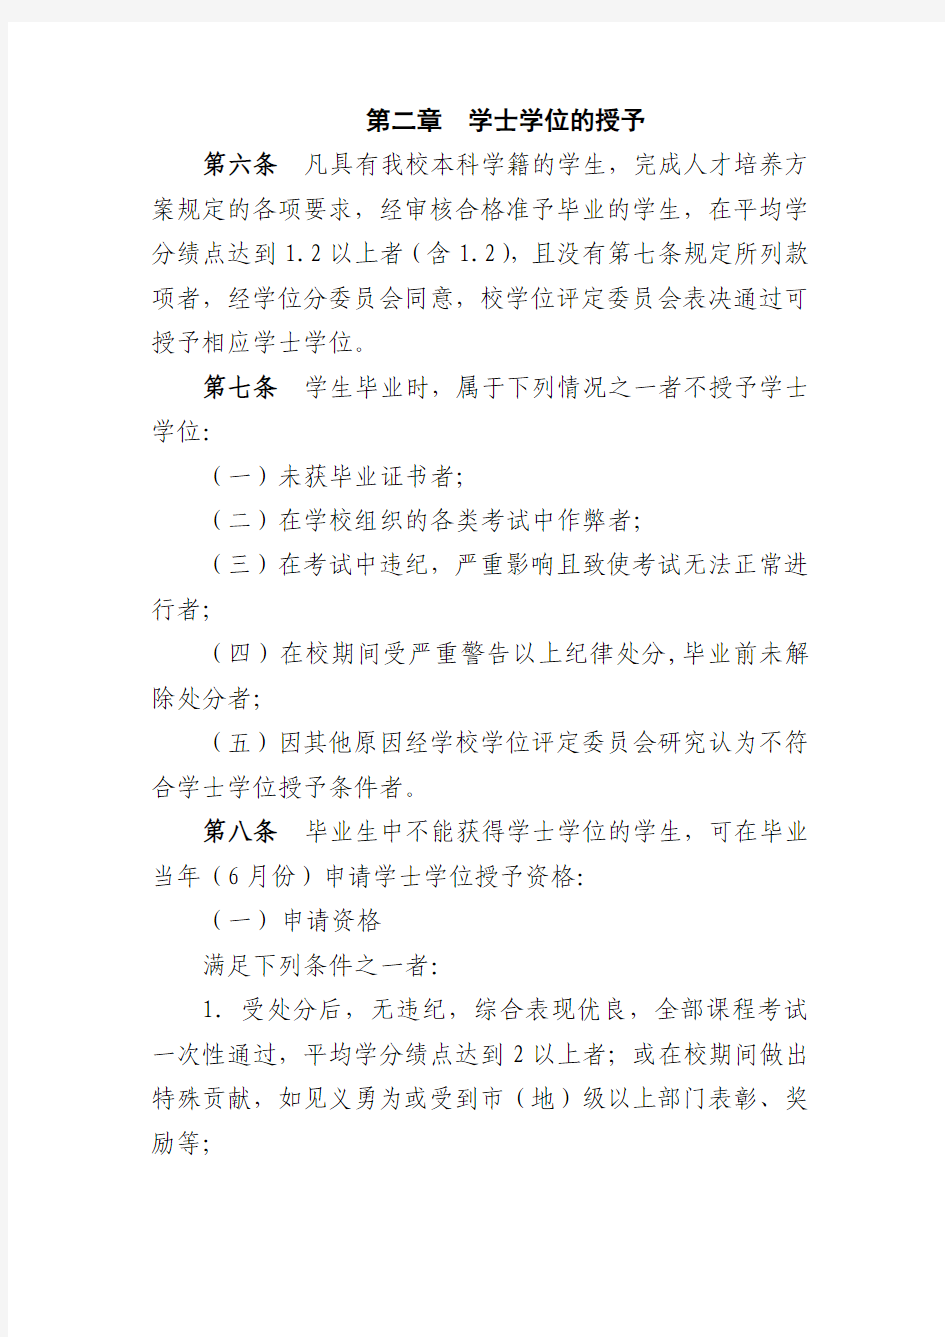 黑龙江科技大学学士学位授予工作实施细则